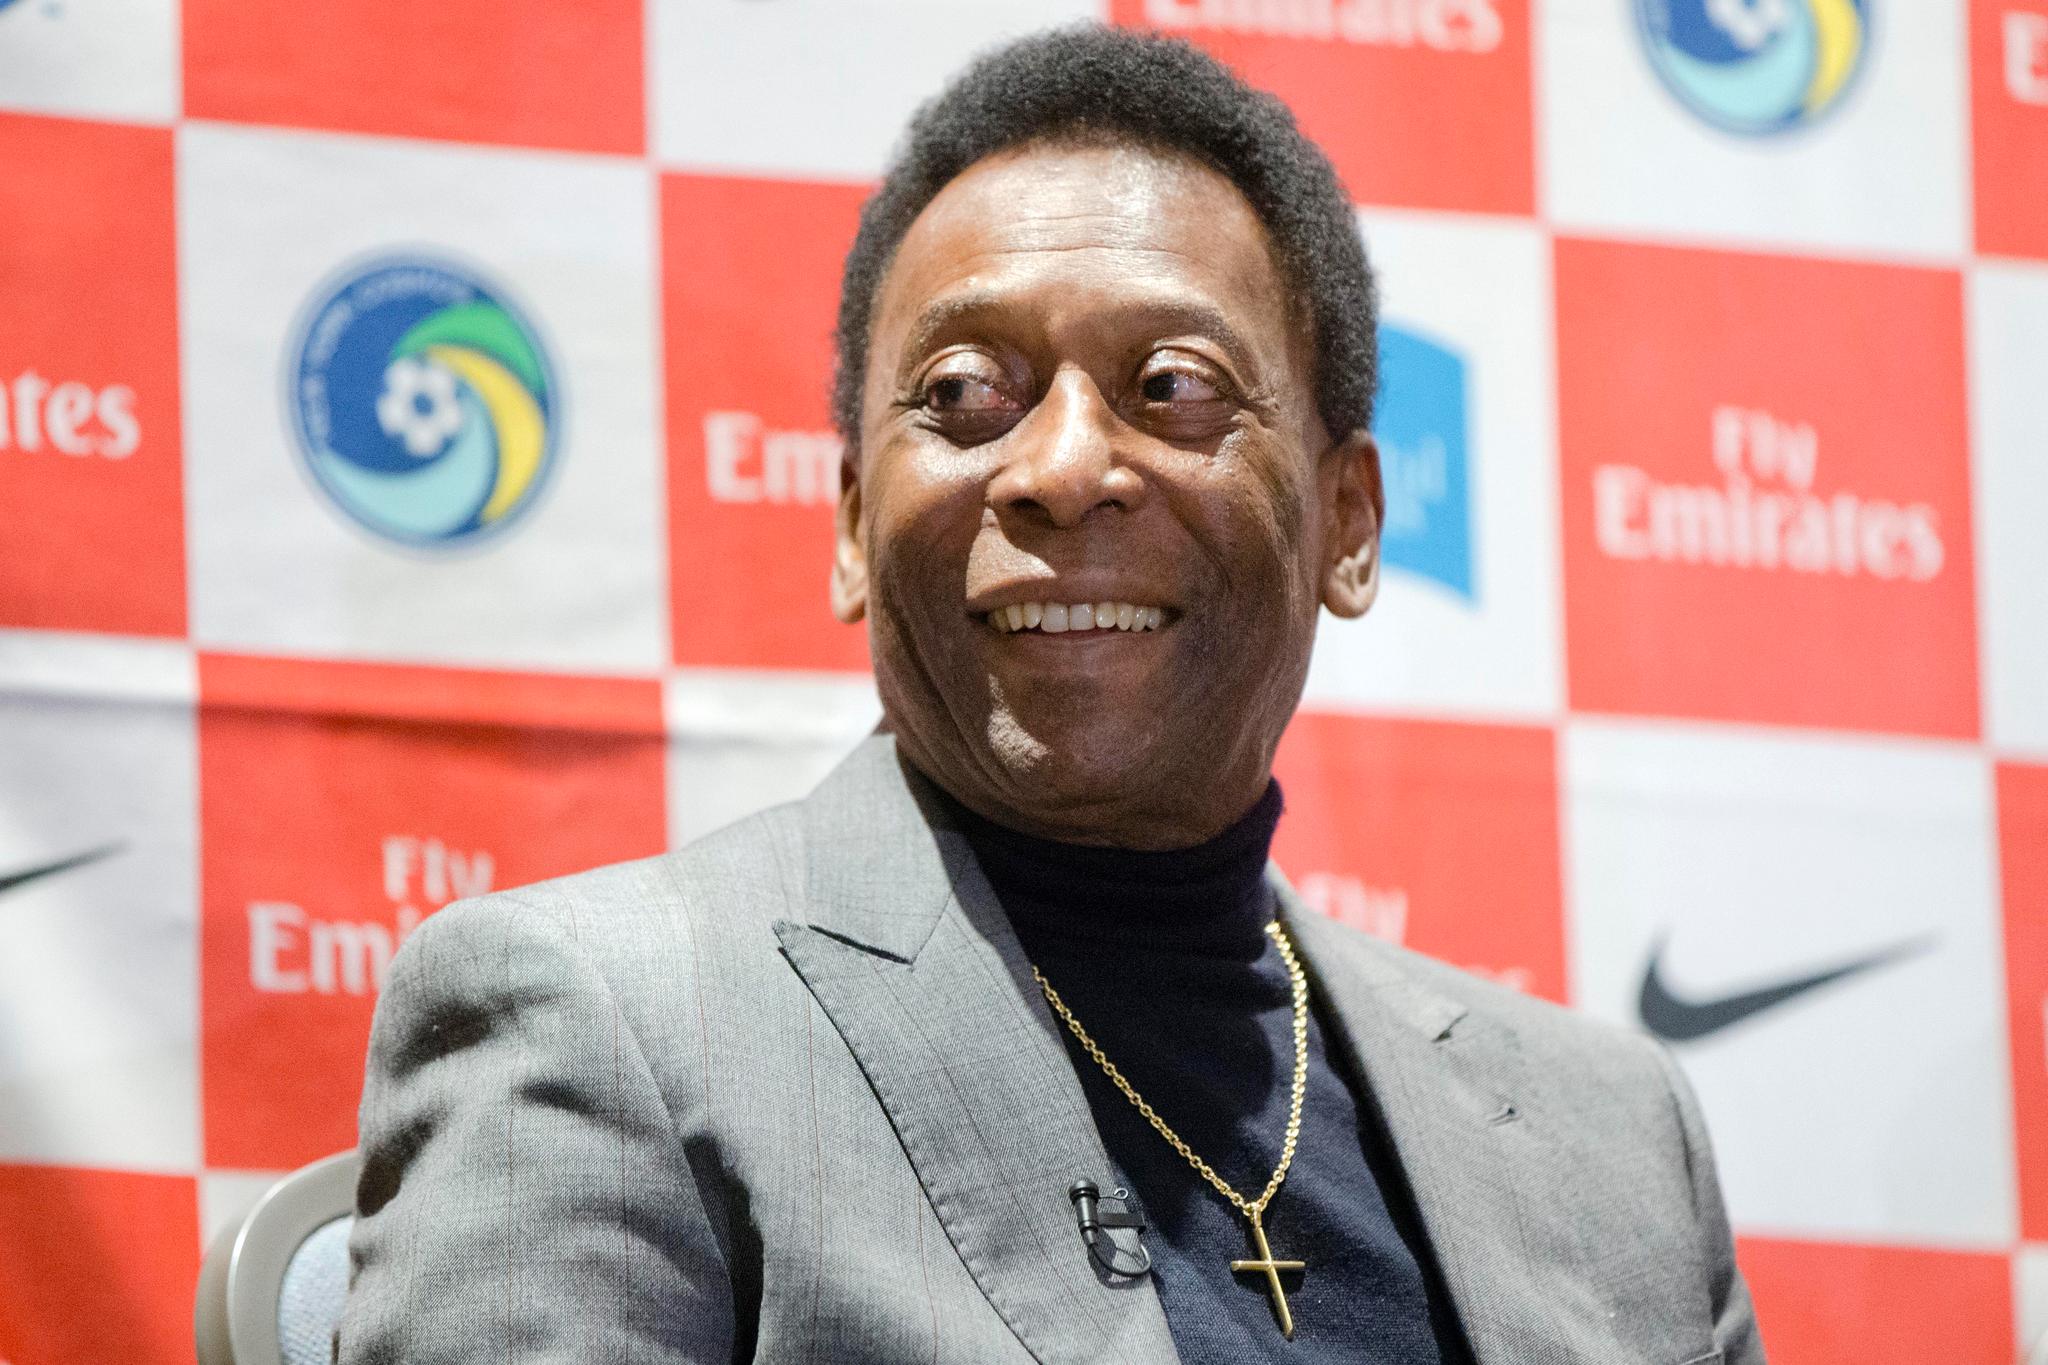 LEGENDE: Pelé blir regnet som en av fotballens største gjennom tidene. 